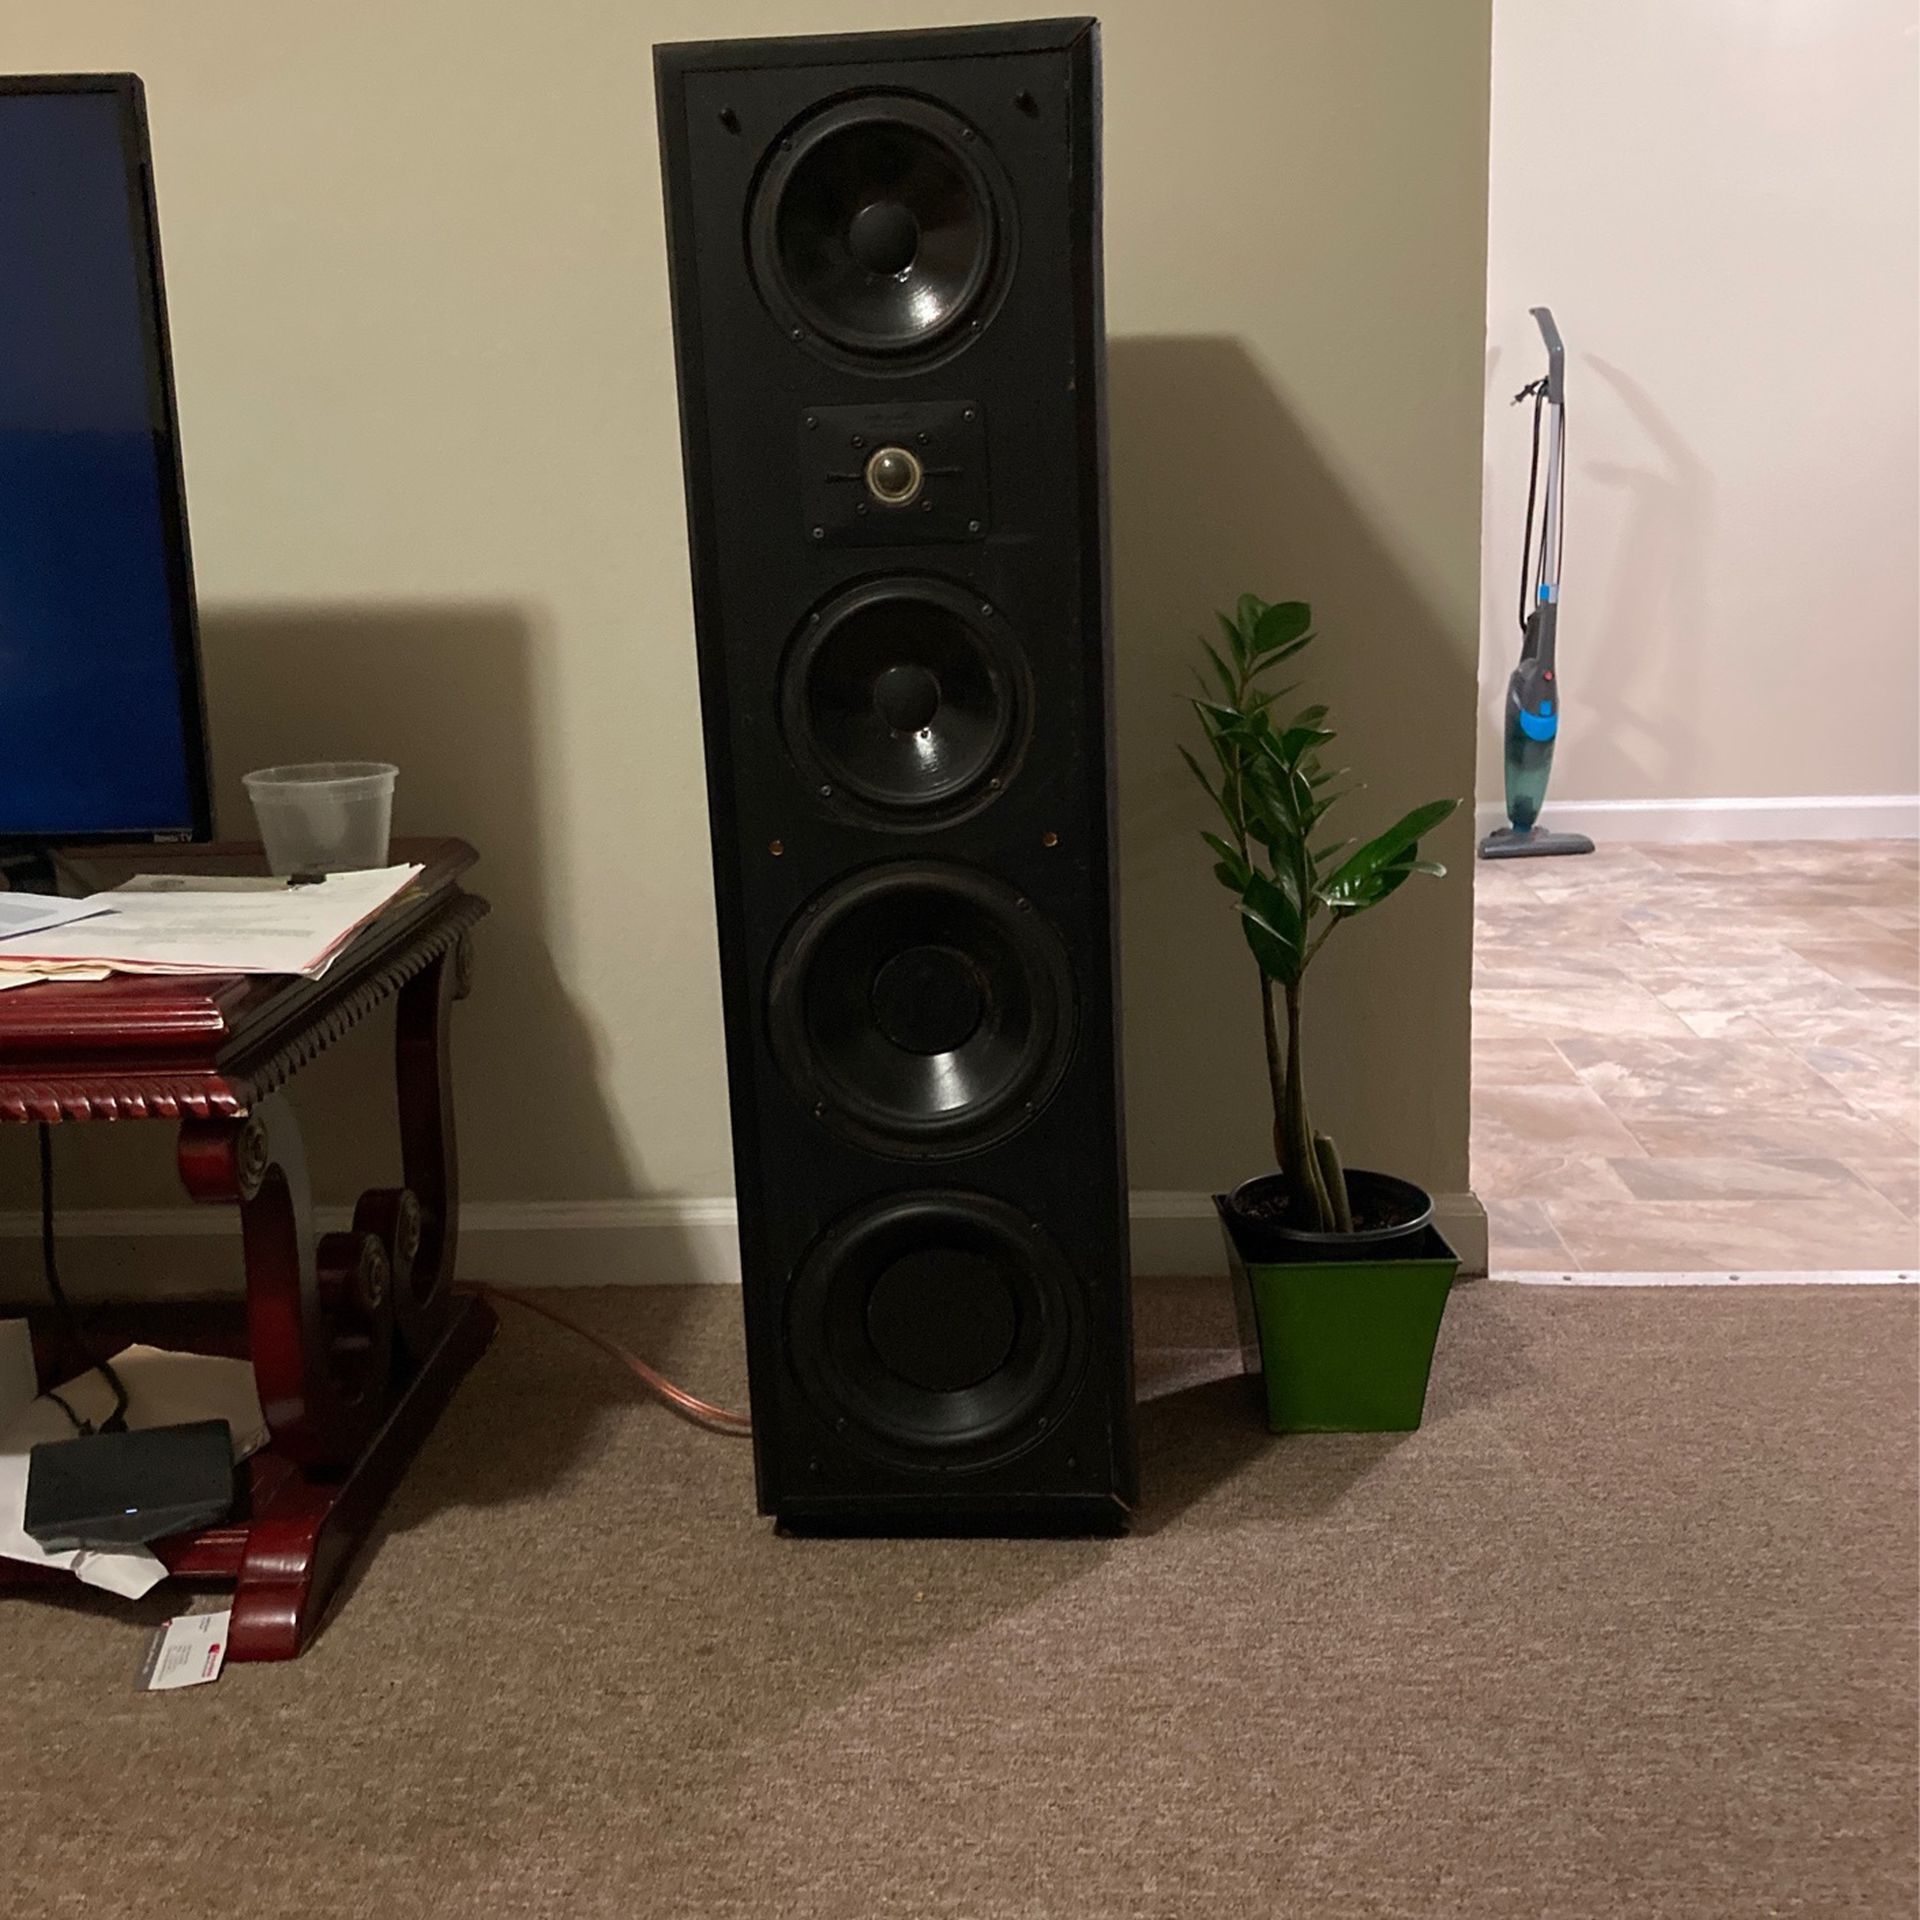 3.5 Feet Tall Polk Audio Speakers